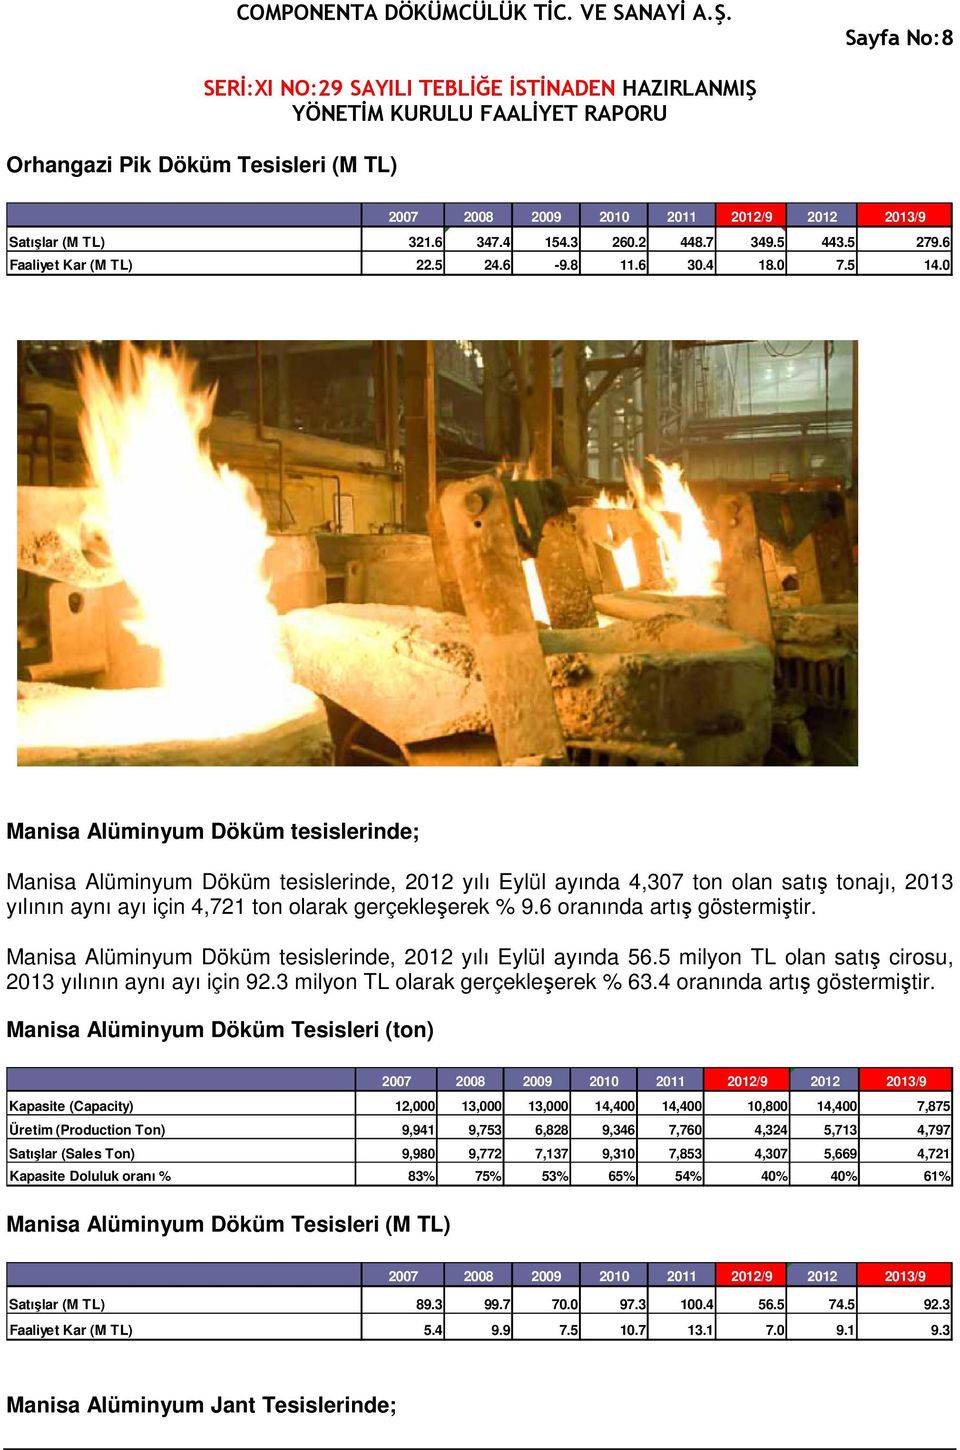 6 oranında artış göstermiştir. Manisa Alüminyum Döküm tesislerinde, 2012 yılı Eylül ayında 56.5 milyon TL olan satış cirosu, 2013 yılının aynı ayı için 92.3 milyon TL olarak gerçekleşerek % 63.